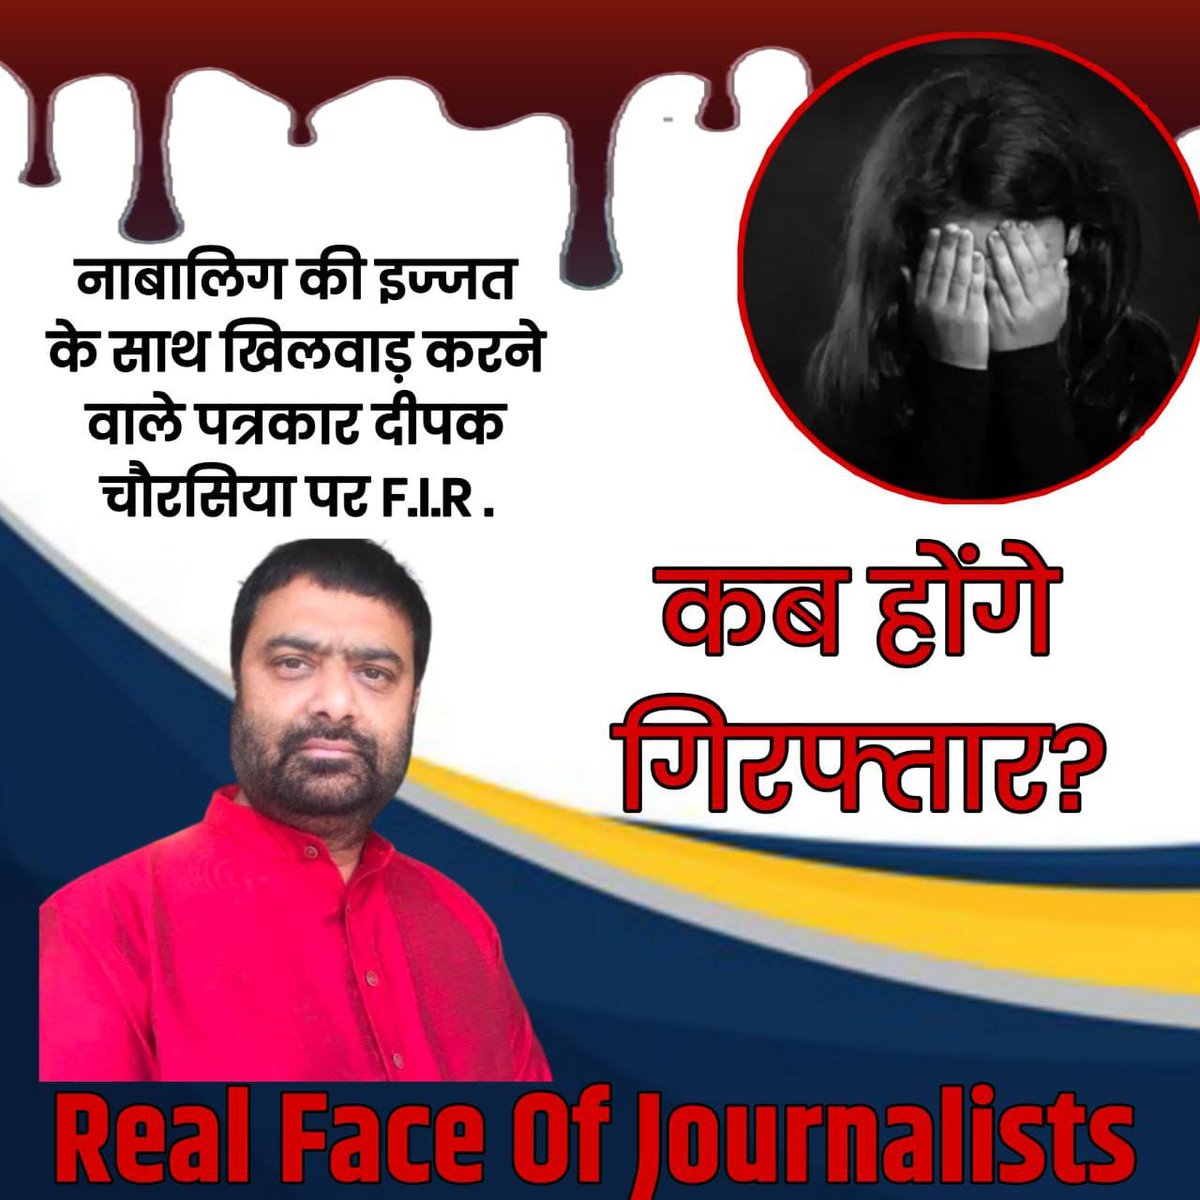 CulpritDeepakChaurasia
SaveTheDemocracy
भ्रष्ट पत्रकारिता
#TruthBehindJournalism
मीडिया झूठ को सच और सच को झूठ साबित करके निर्दोषों का जीवन लोगों का विश्वास और लोकतंत्र की गरिमा को तार तार करती है पैसों के लालच में पत्रकार किसी भी हद तक जाकर जनता को झूठी ब्रेकिंगन्यूज दिखातेहै